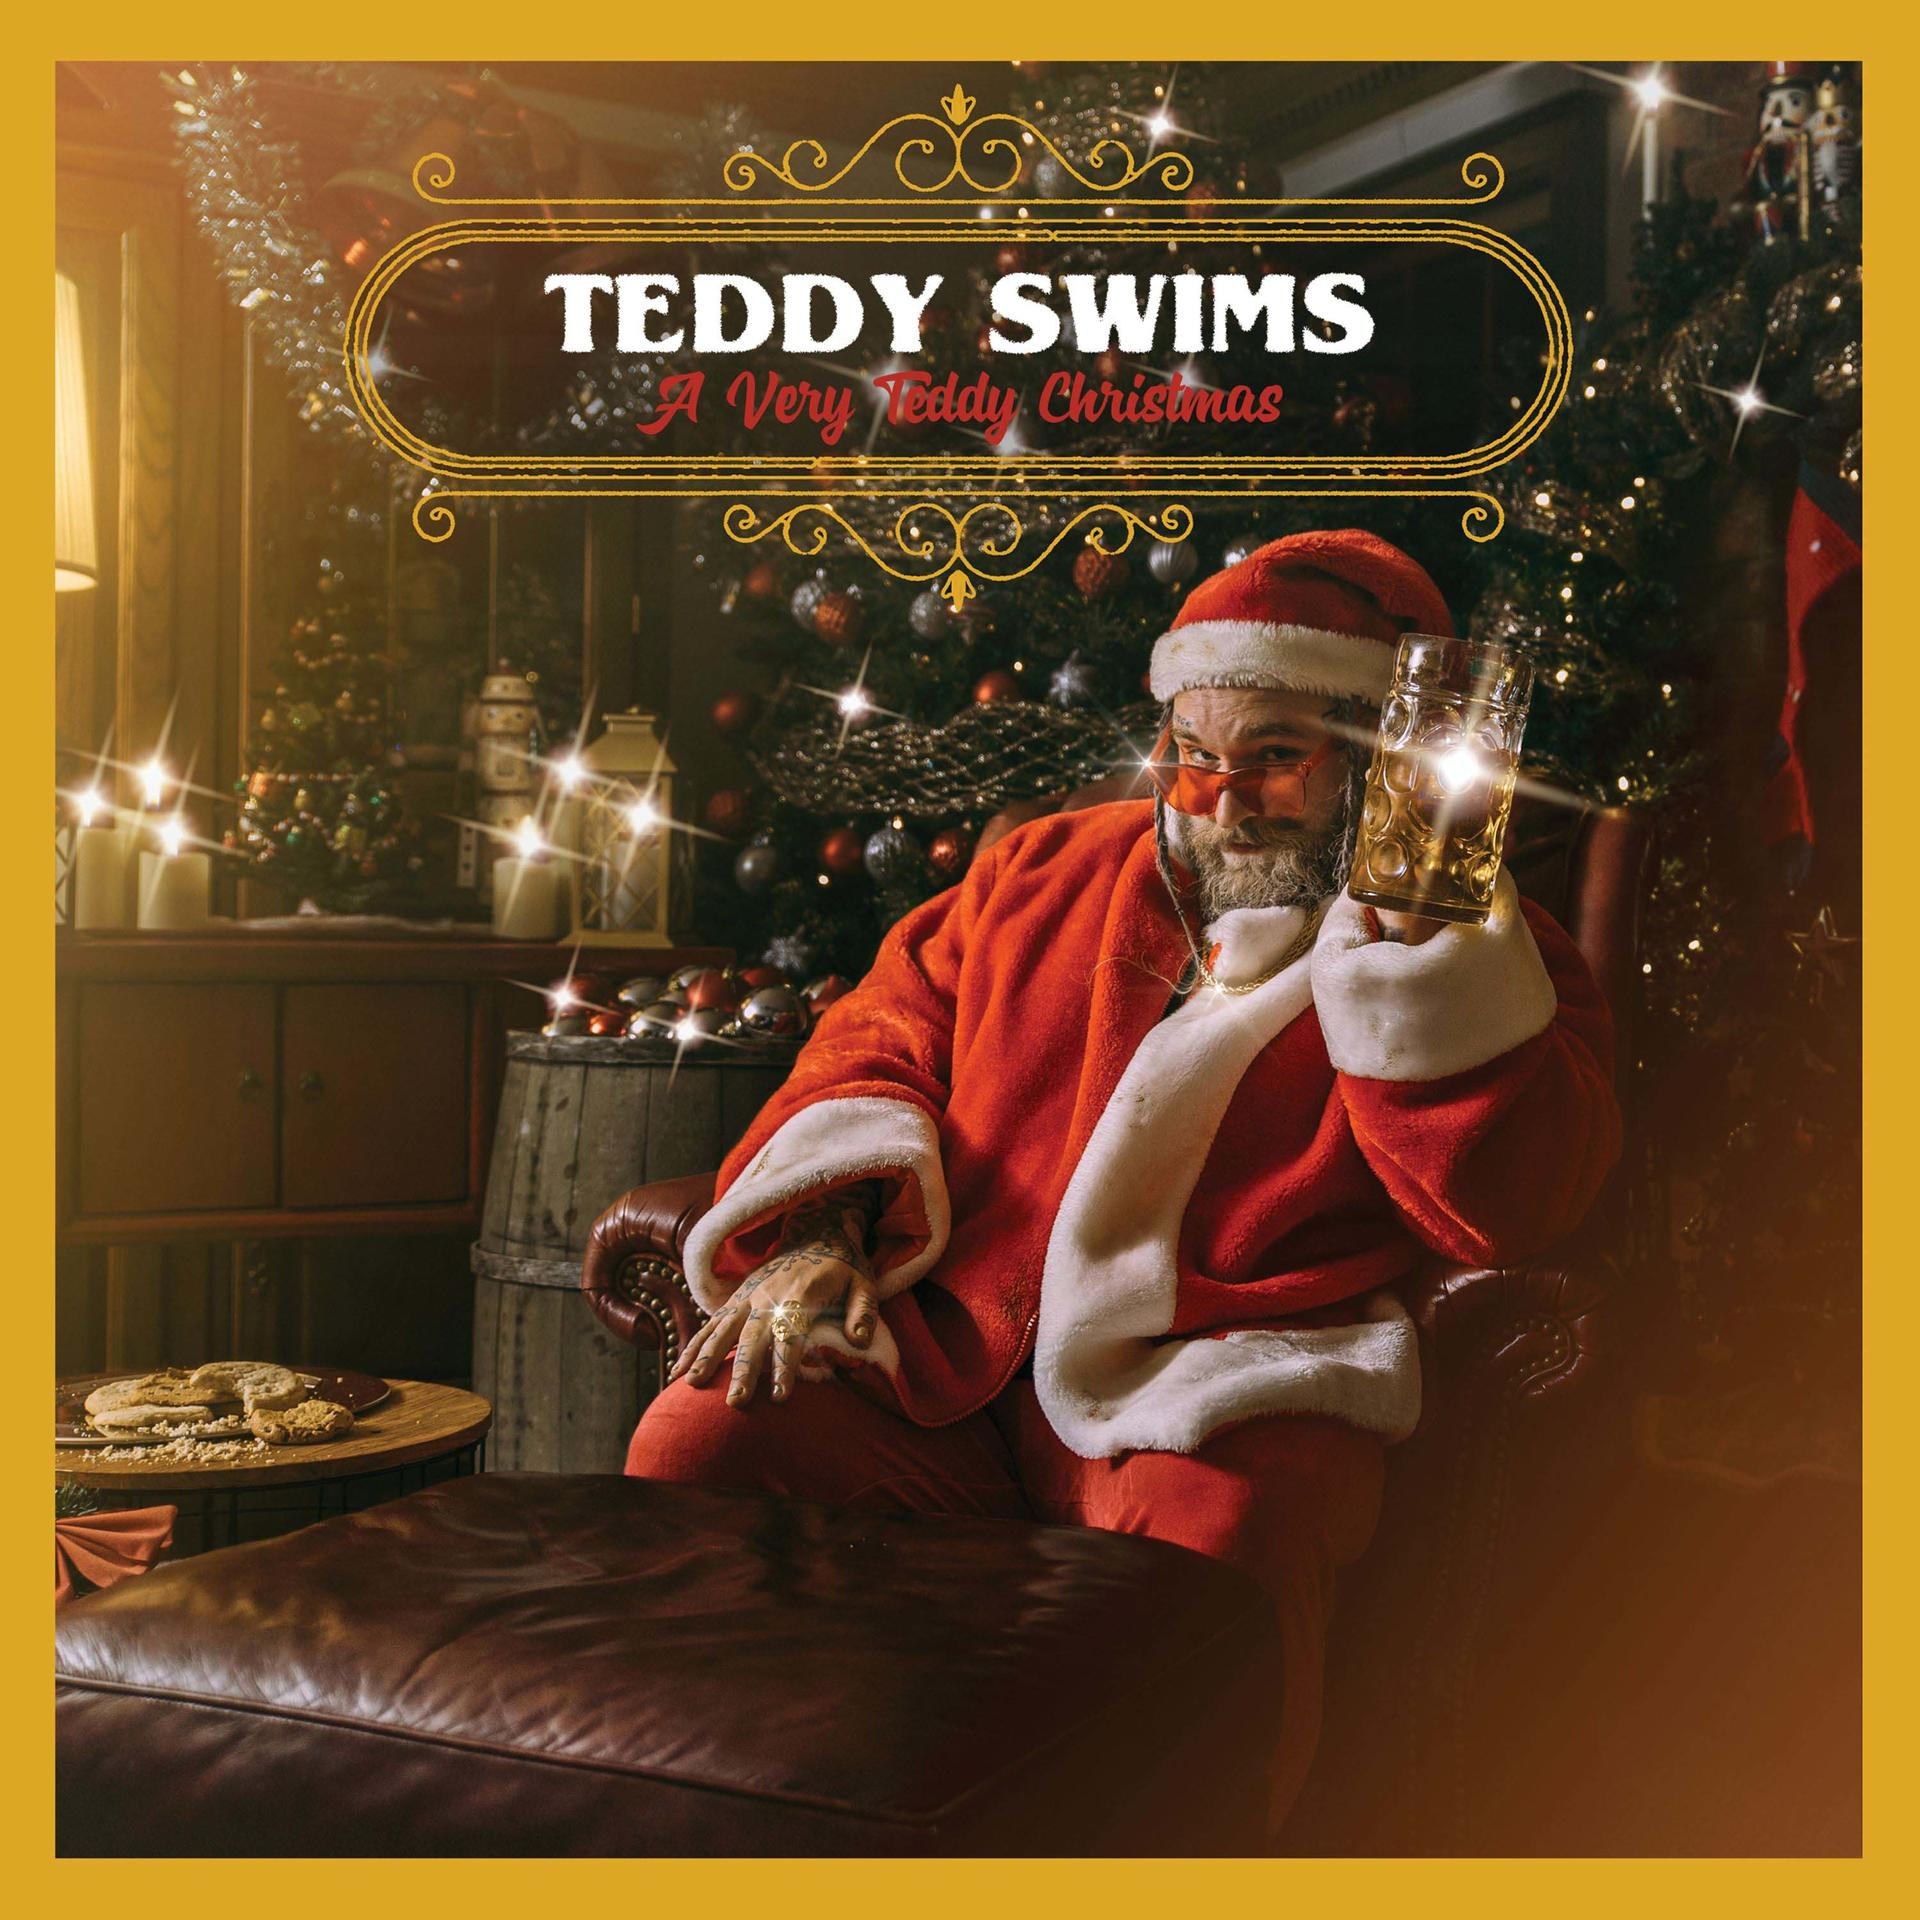 Very Teddy - (CD) - Swims A Christmas Teddy